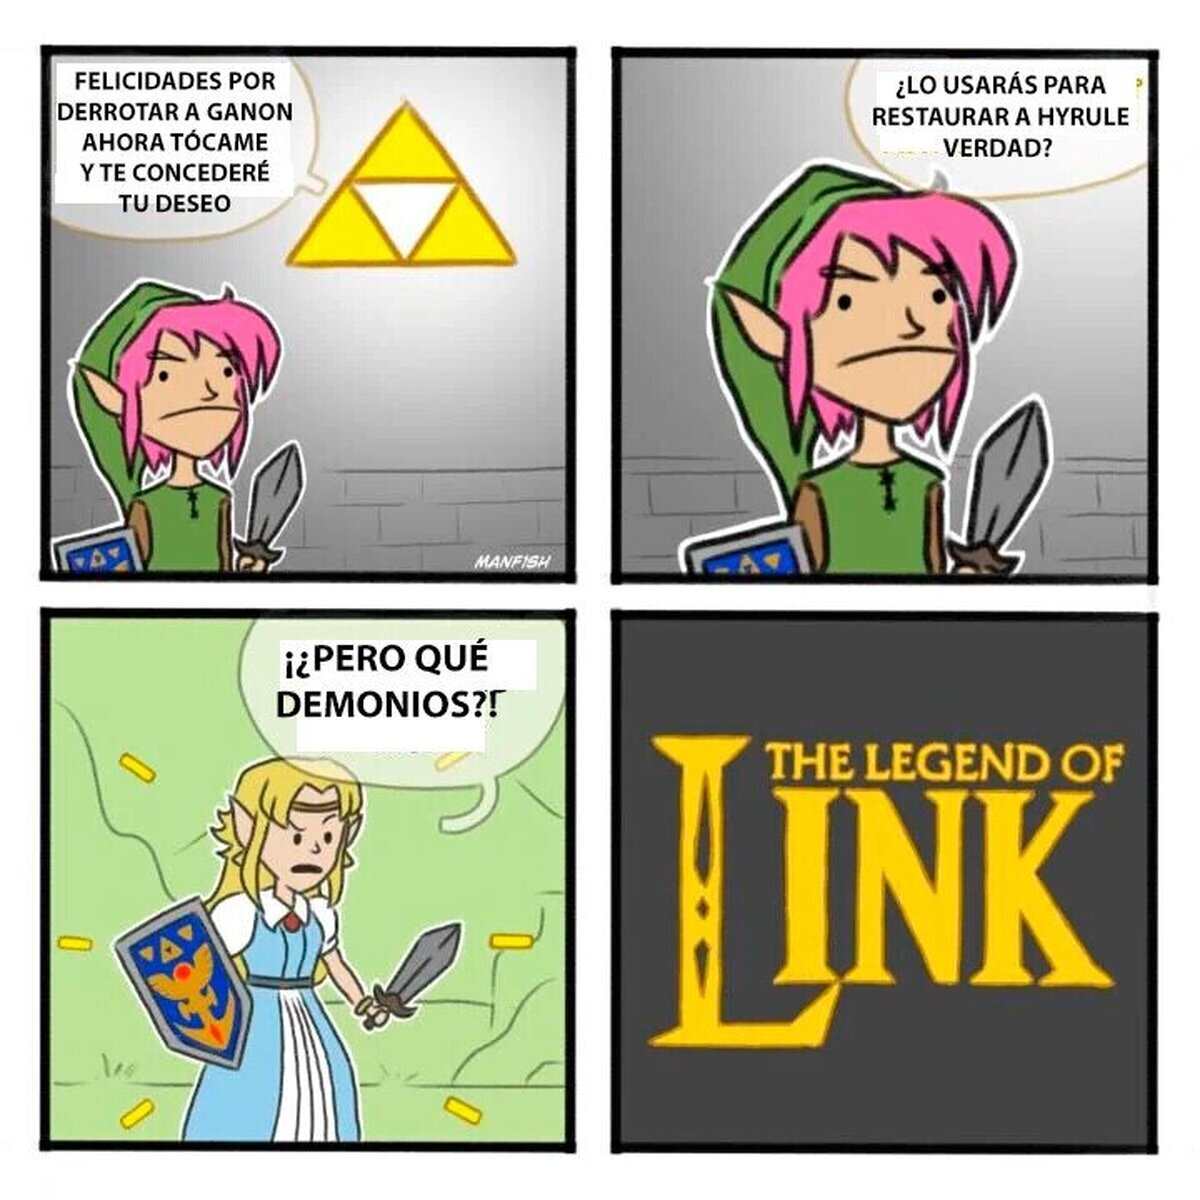 La venganza de link